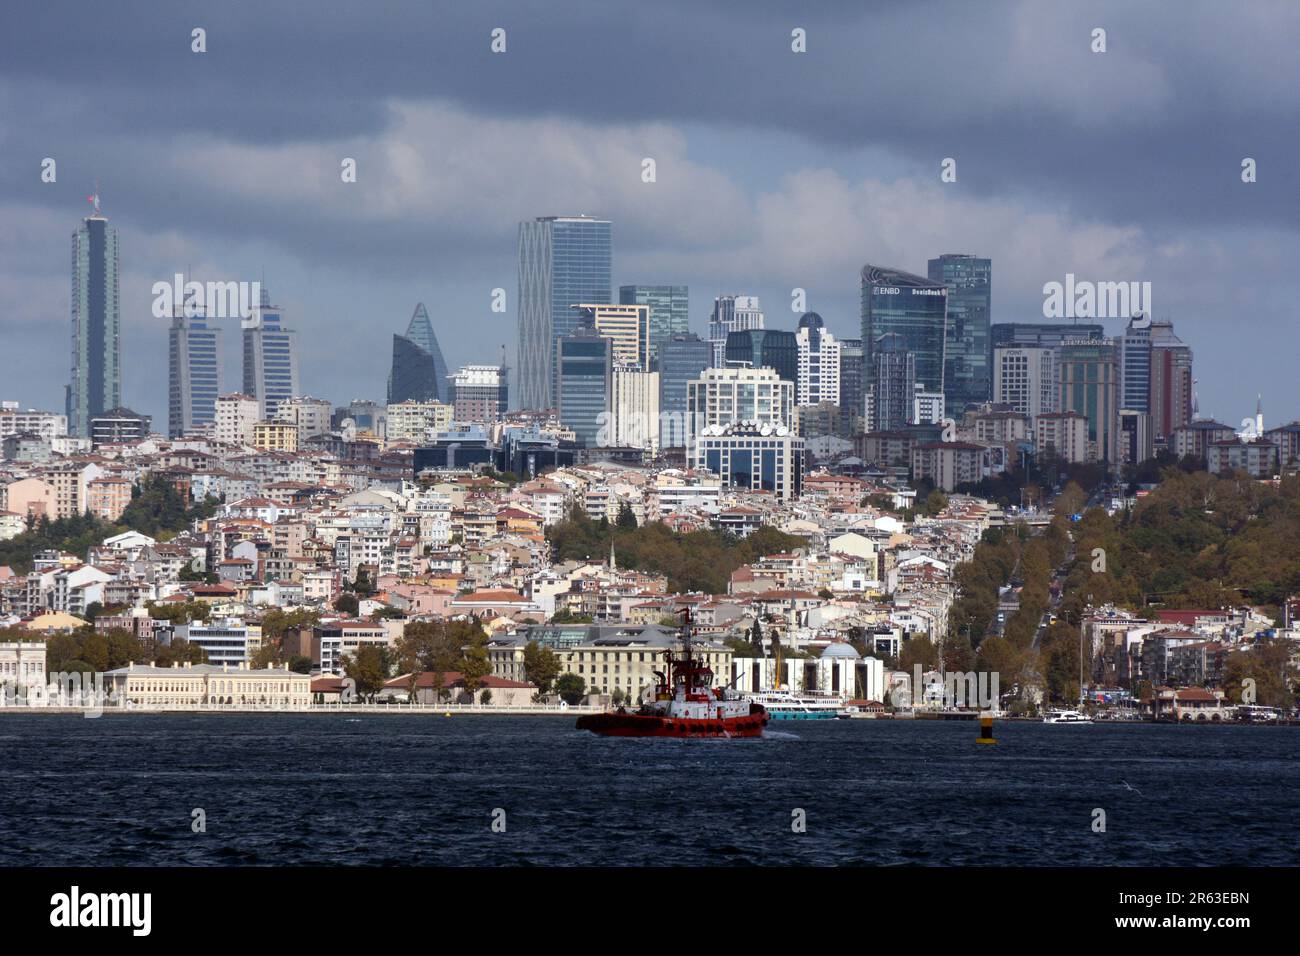 Die Wolkenkratzer und die Skyline von Levant, dem Geschäftsviertel von Istanbul auf der europäischen Seite, über dem Bosporus, Bekistas, der Türkei/Turkiye. Stockfoto